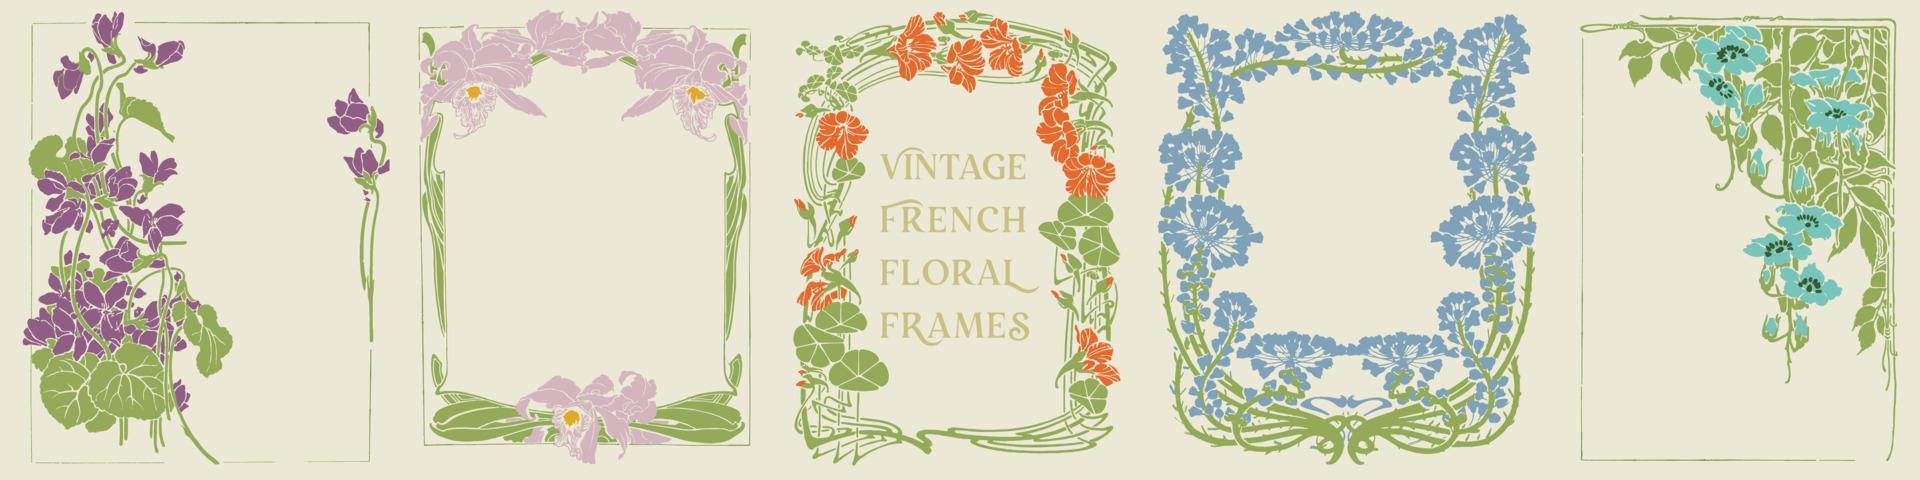 molduras florais francesas vintage. design de capa de livro, convite, design de etiqueta, embalagem, cartão postal e modelo de cartão. vetor